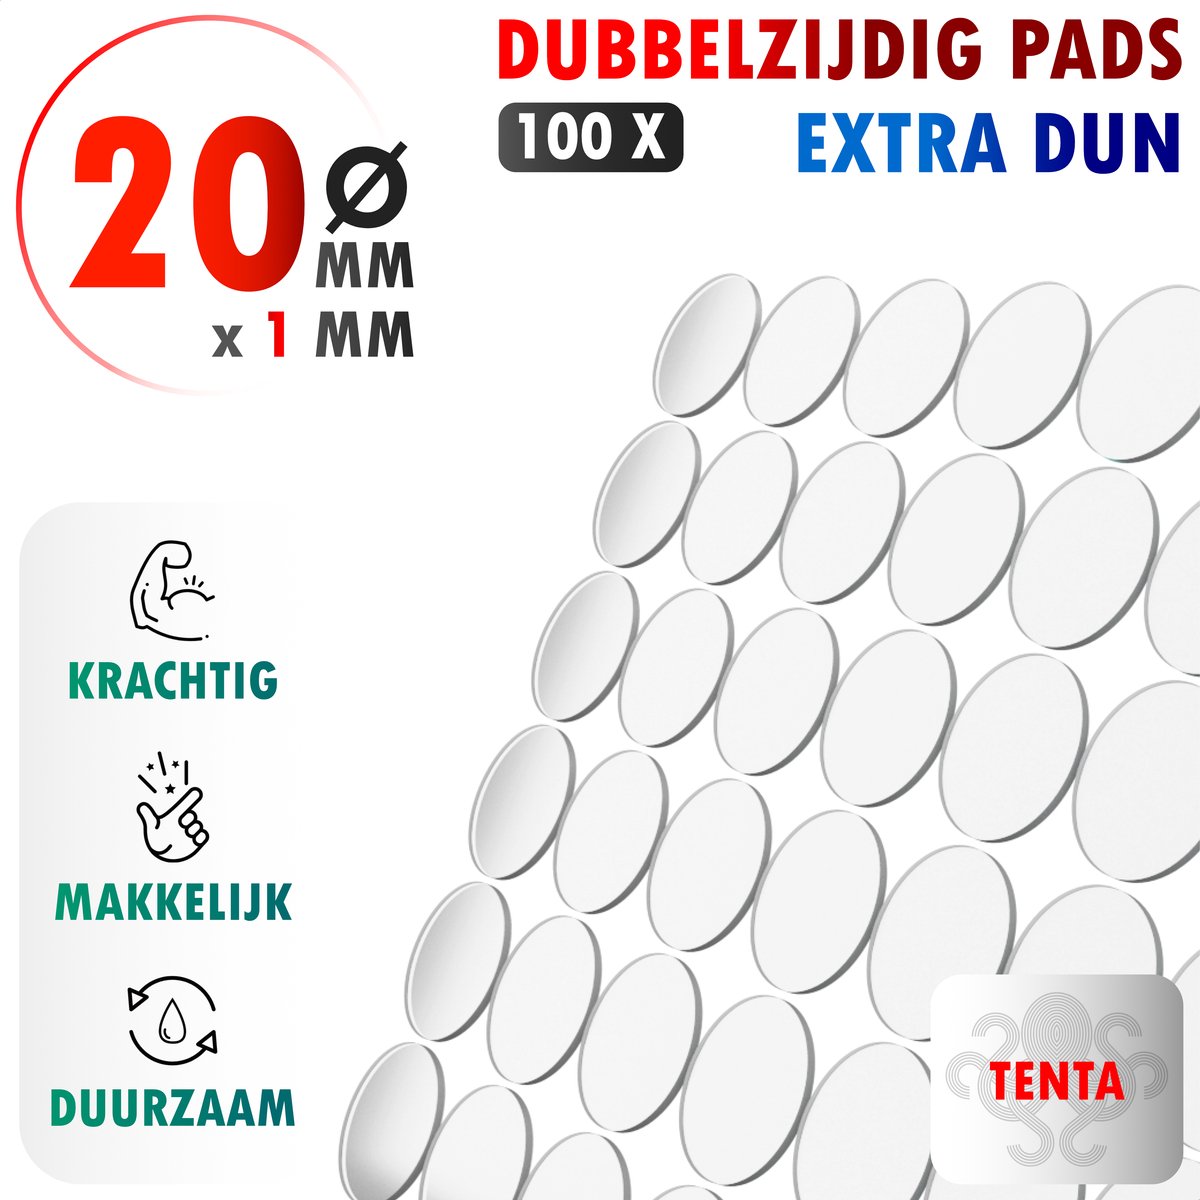 TENTA® Dubbelzijdig Tape Plakkers Extra Dun - Krachtig - Makkelijk - Duurzaam -20mm x 1mm - 100x - TENTA®